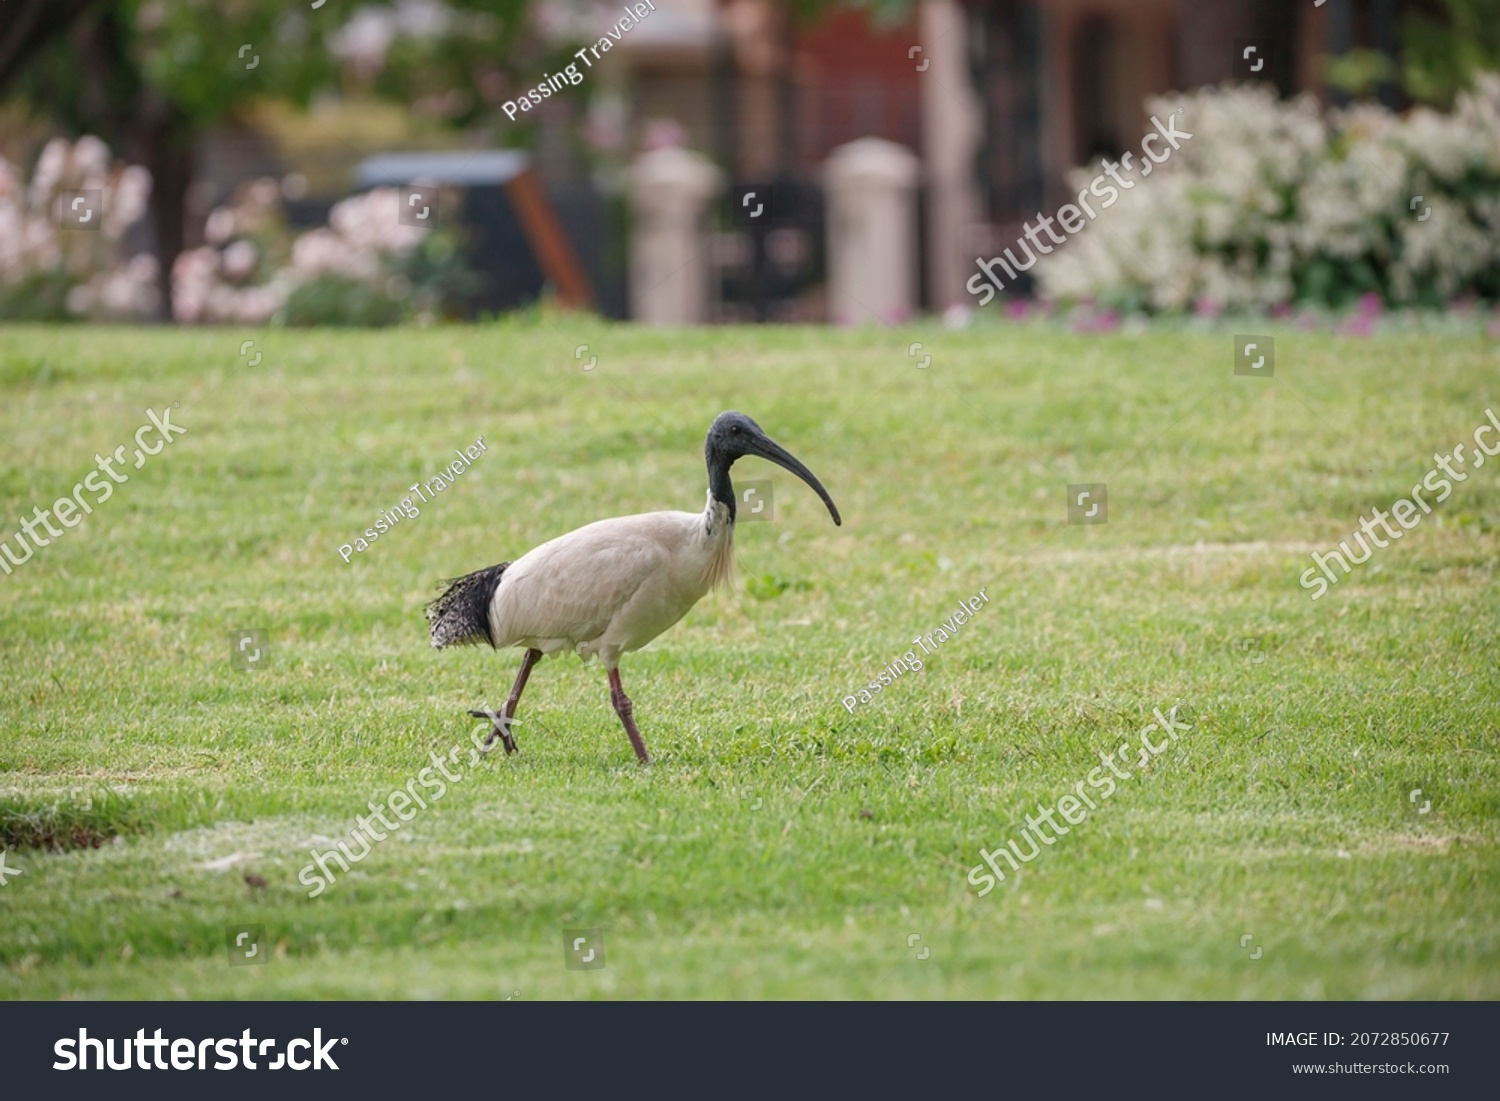 Australian ibis bird with a long beak and long legs found in a grass field #2072850677